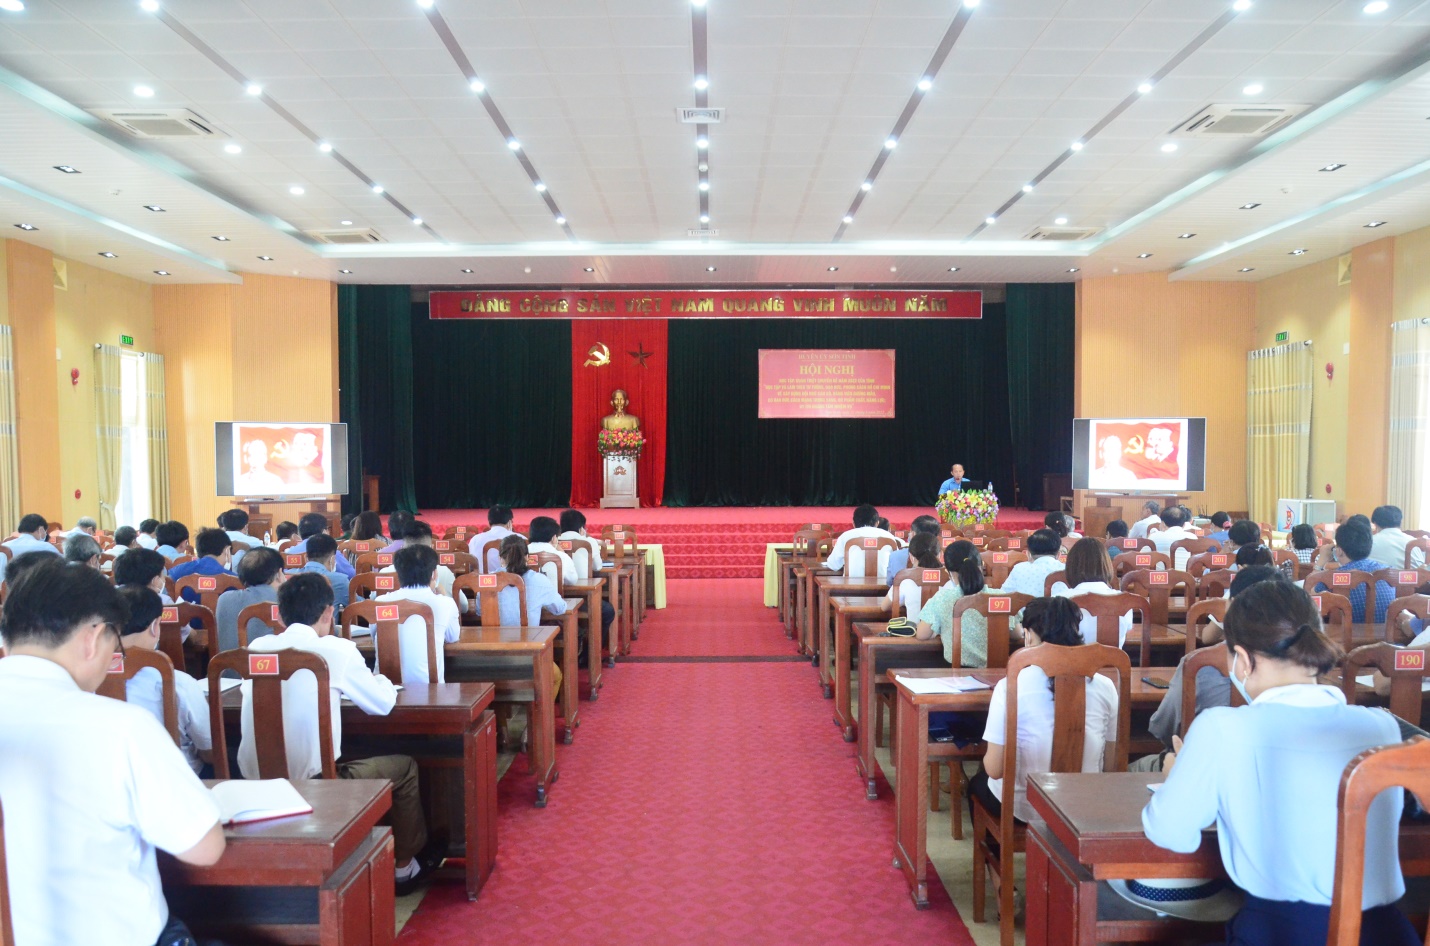 Huyện ủy Sơn Tịnh hội nghị học tập, quán triệt chuyên đề năm 2022 về học tập và làm theo tư tưởng, đạo đức, phong cách Hồ Chí Minh